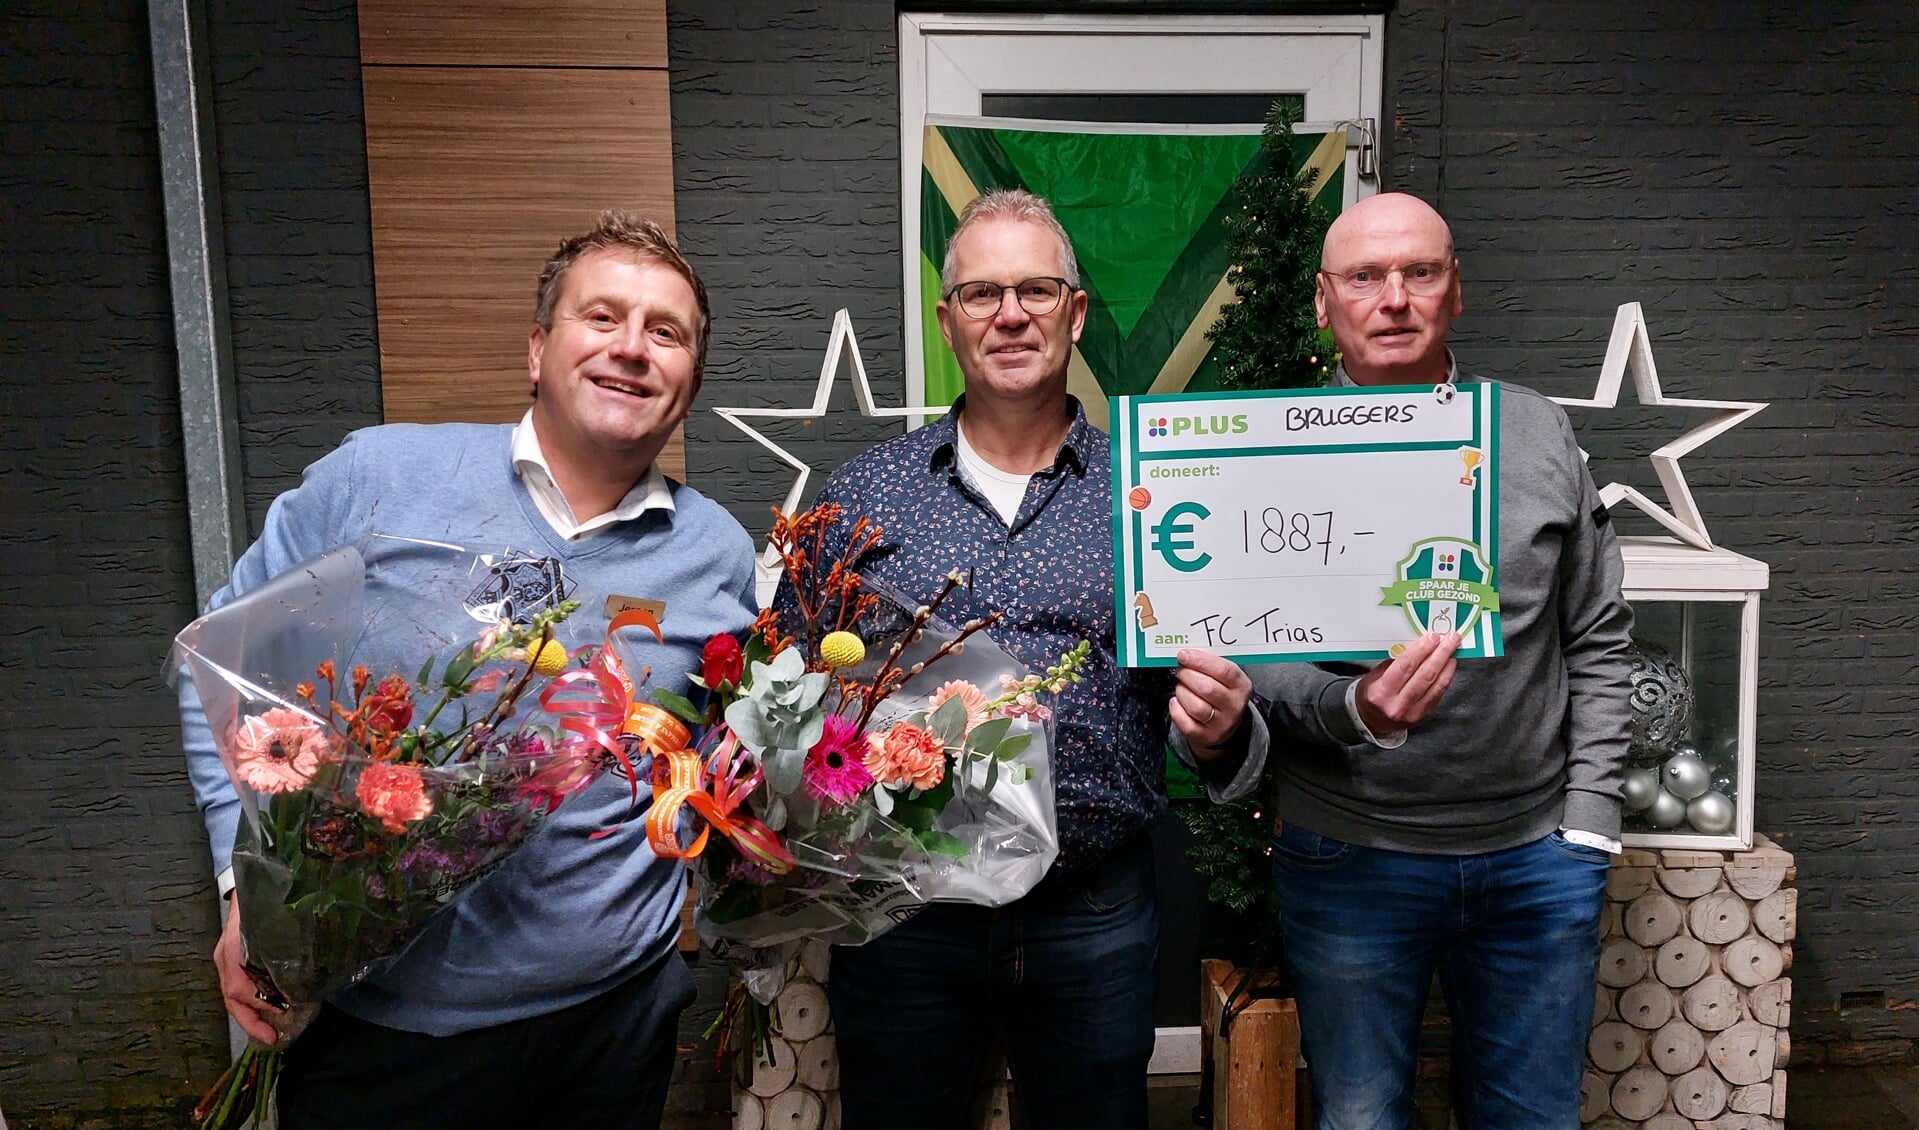 Jeroen Bruggers, André Pelle en Bart Berenschot ‘blij met het geld’. Foto: Han van de Laar